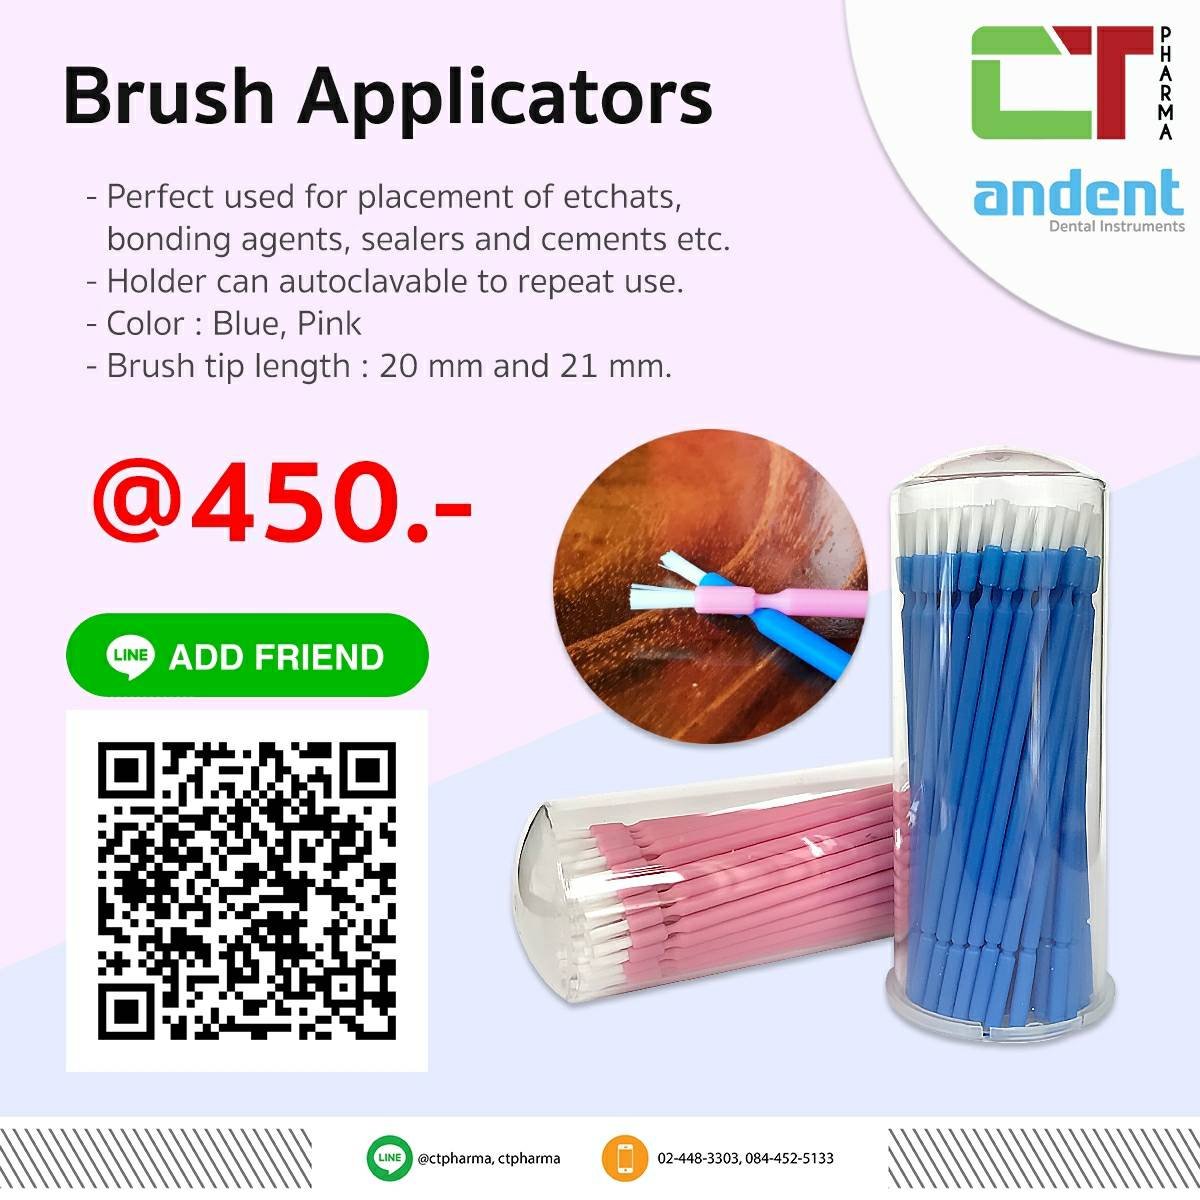 Brush Applicators